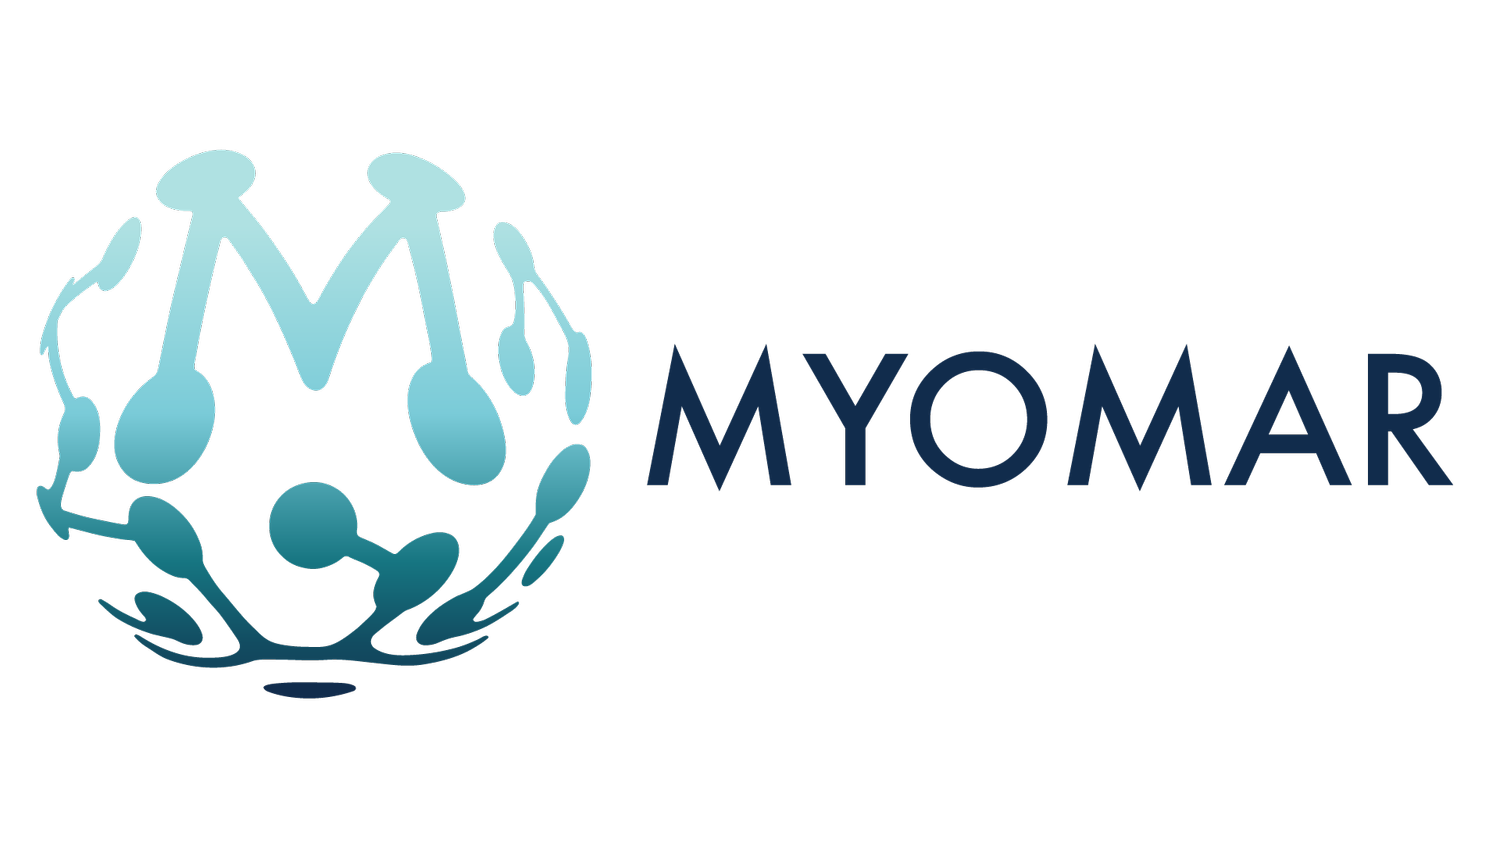 Myomar Molecular Inc.